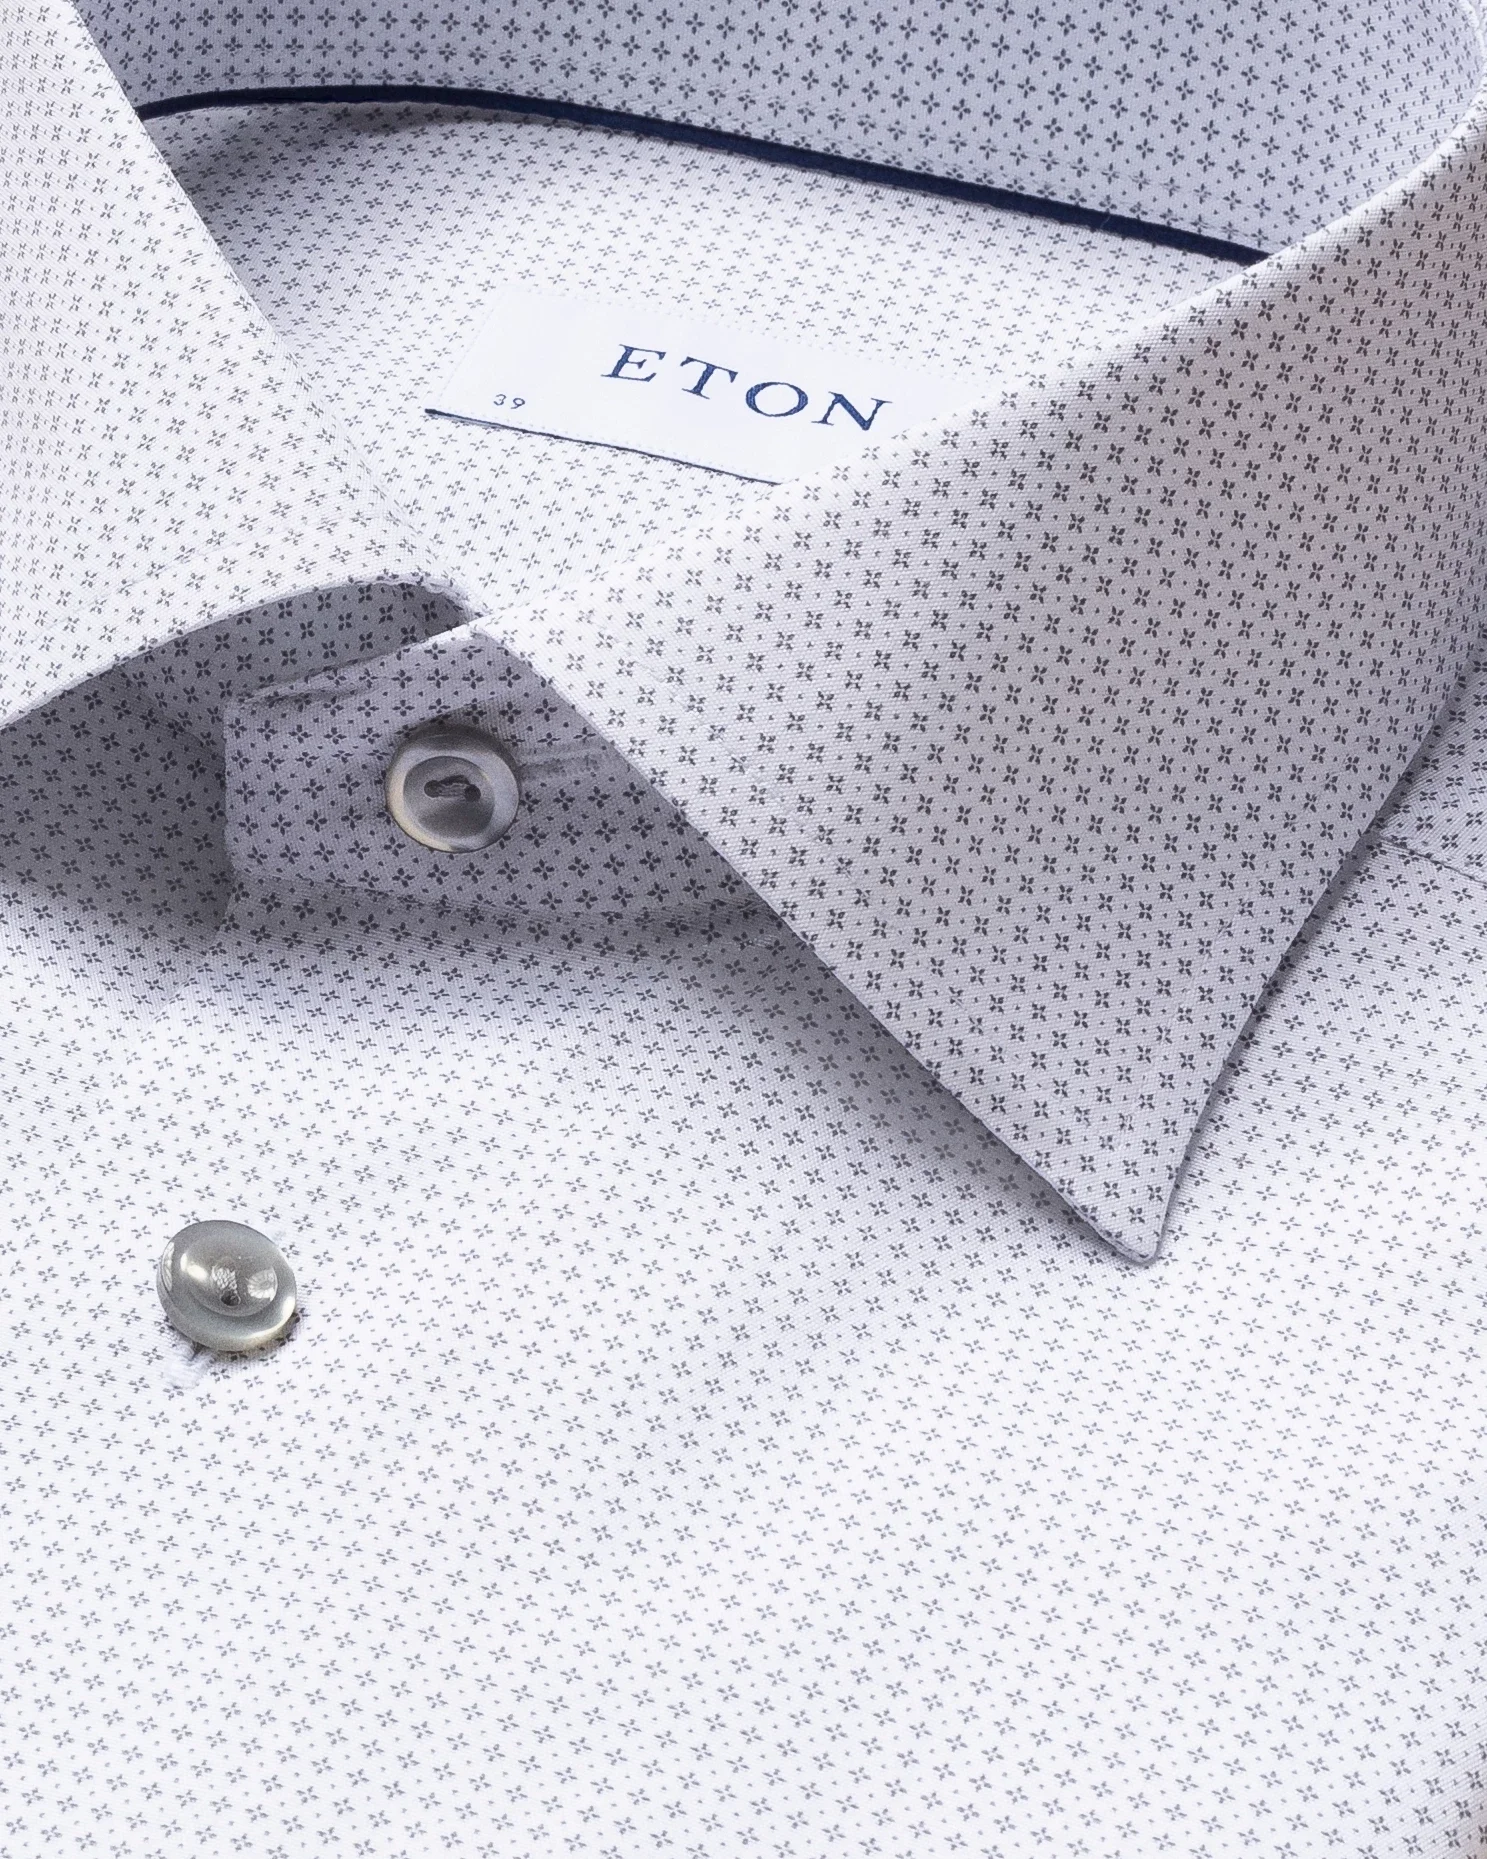 Eton - grey microprinted shirt